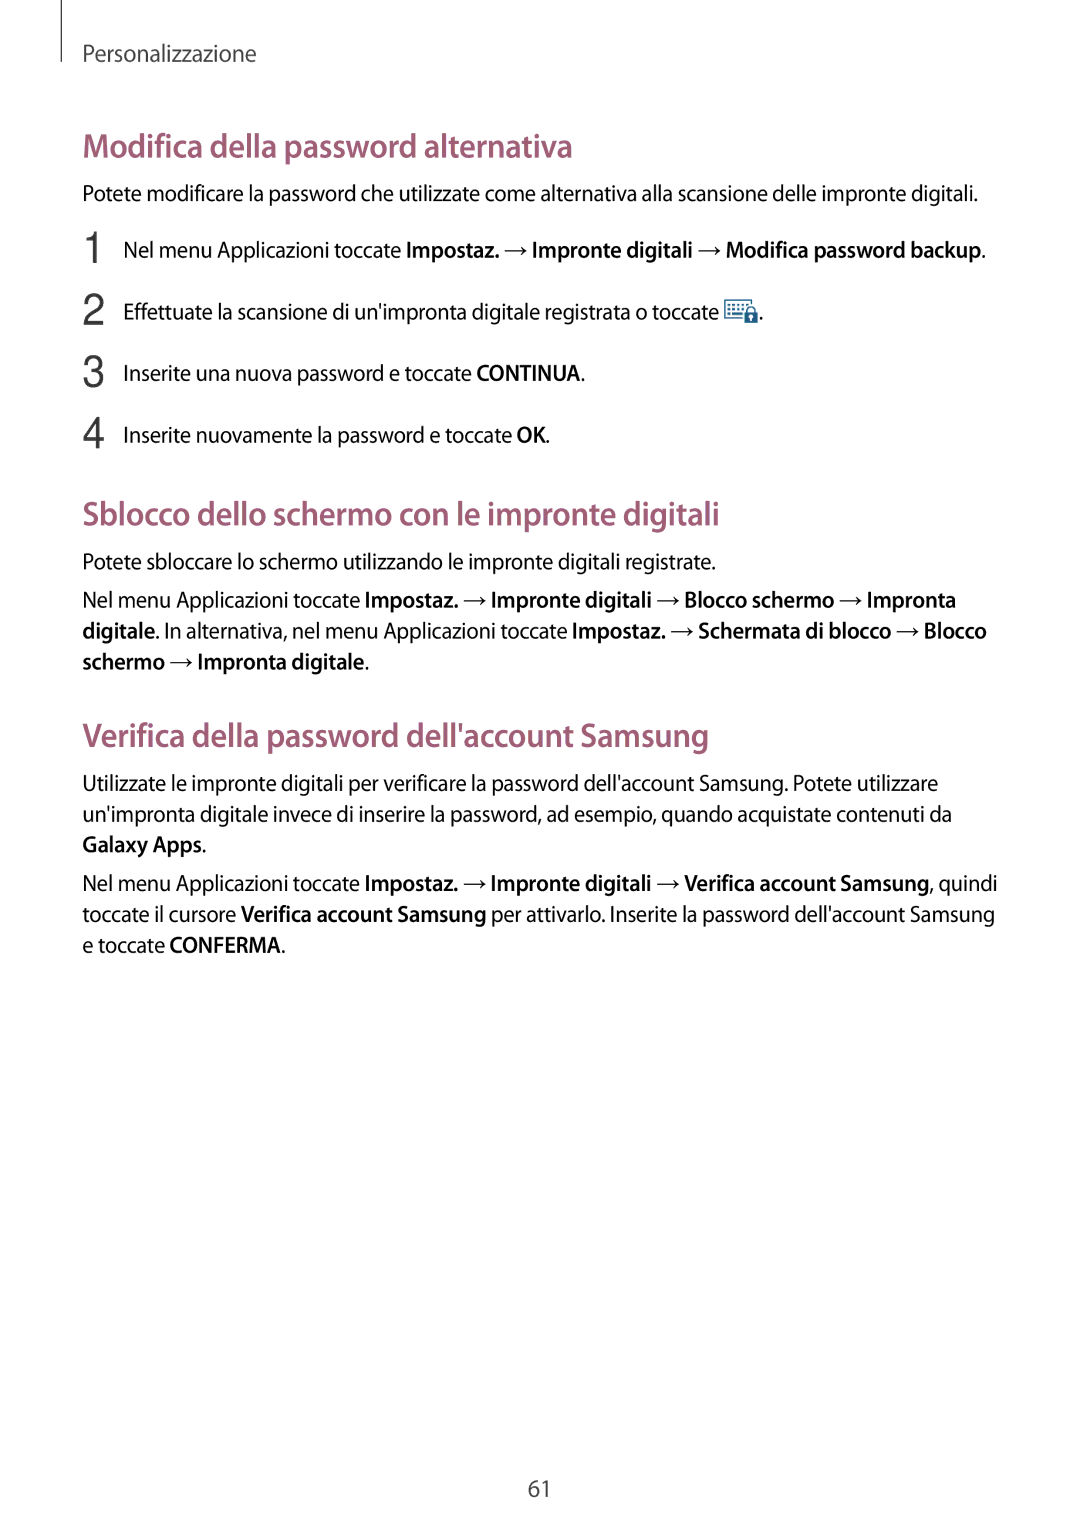 Samsung SM-G800FZDAITV, SM-G800FZWADBT Modifica della password alternativa, Sblocco dello schermo con le impronte digitali 